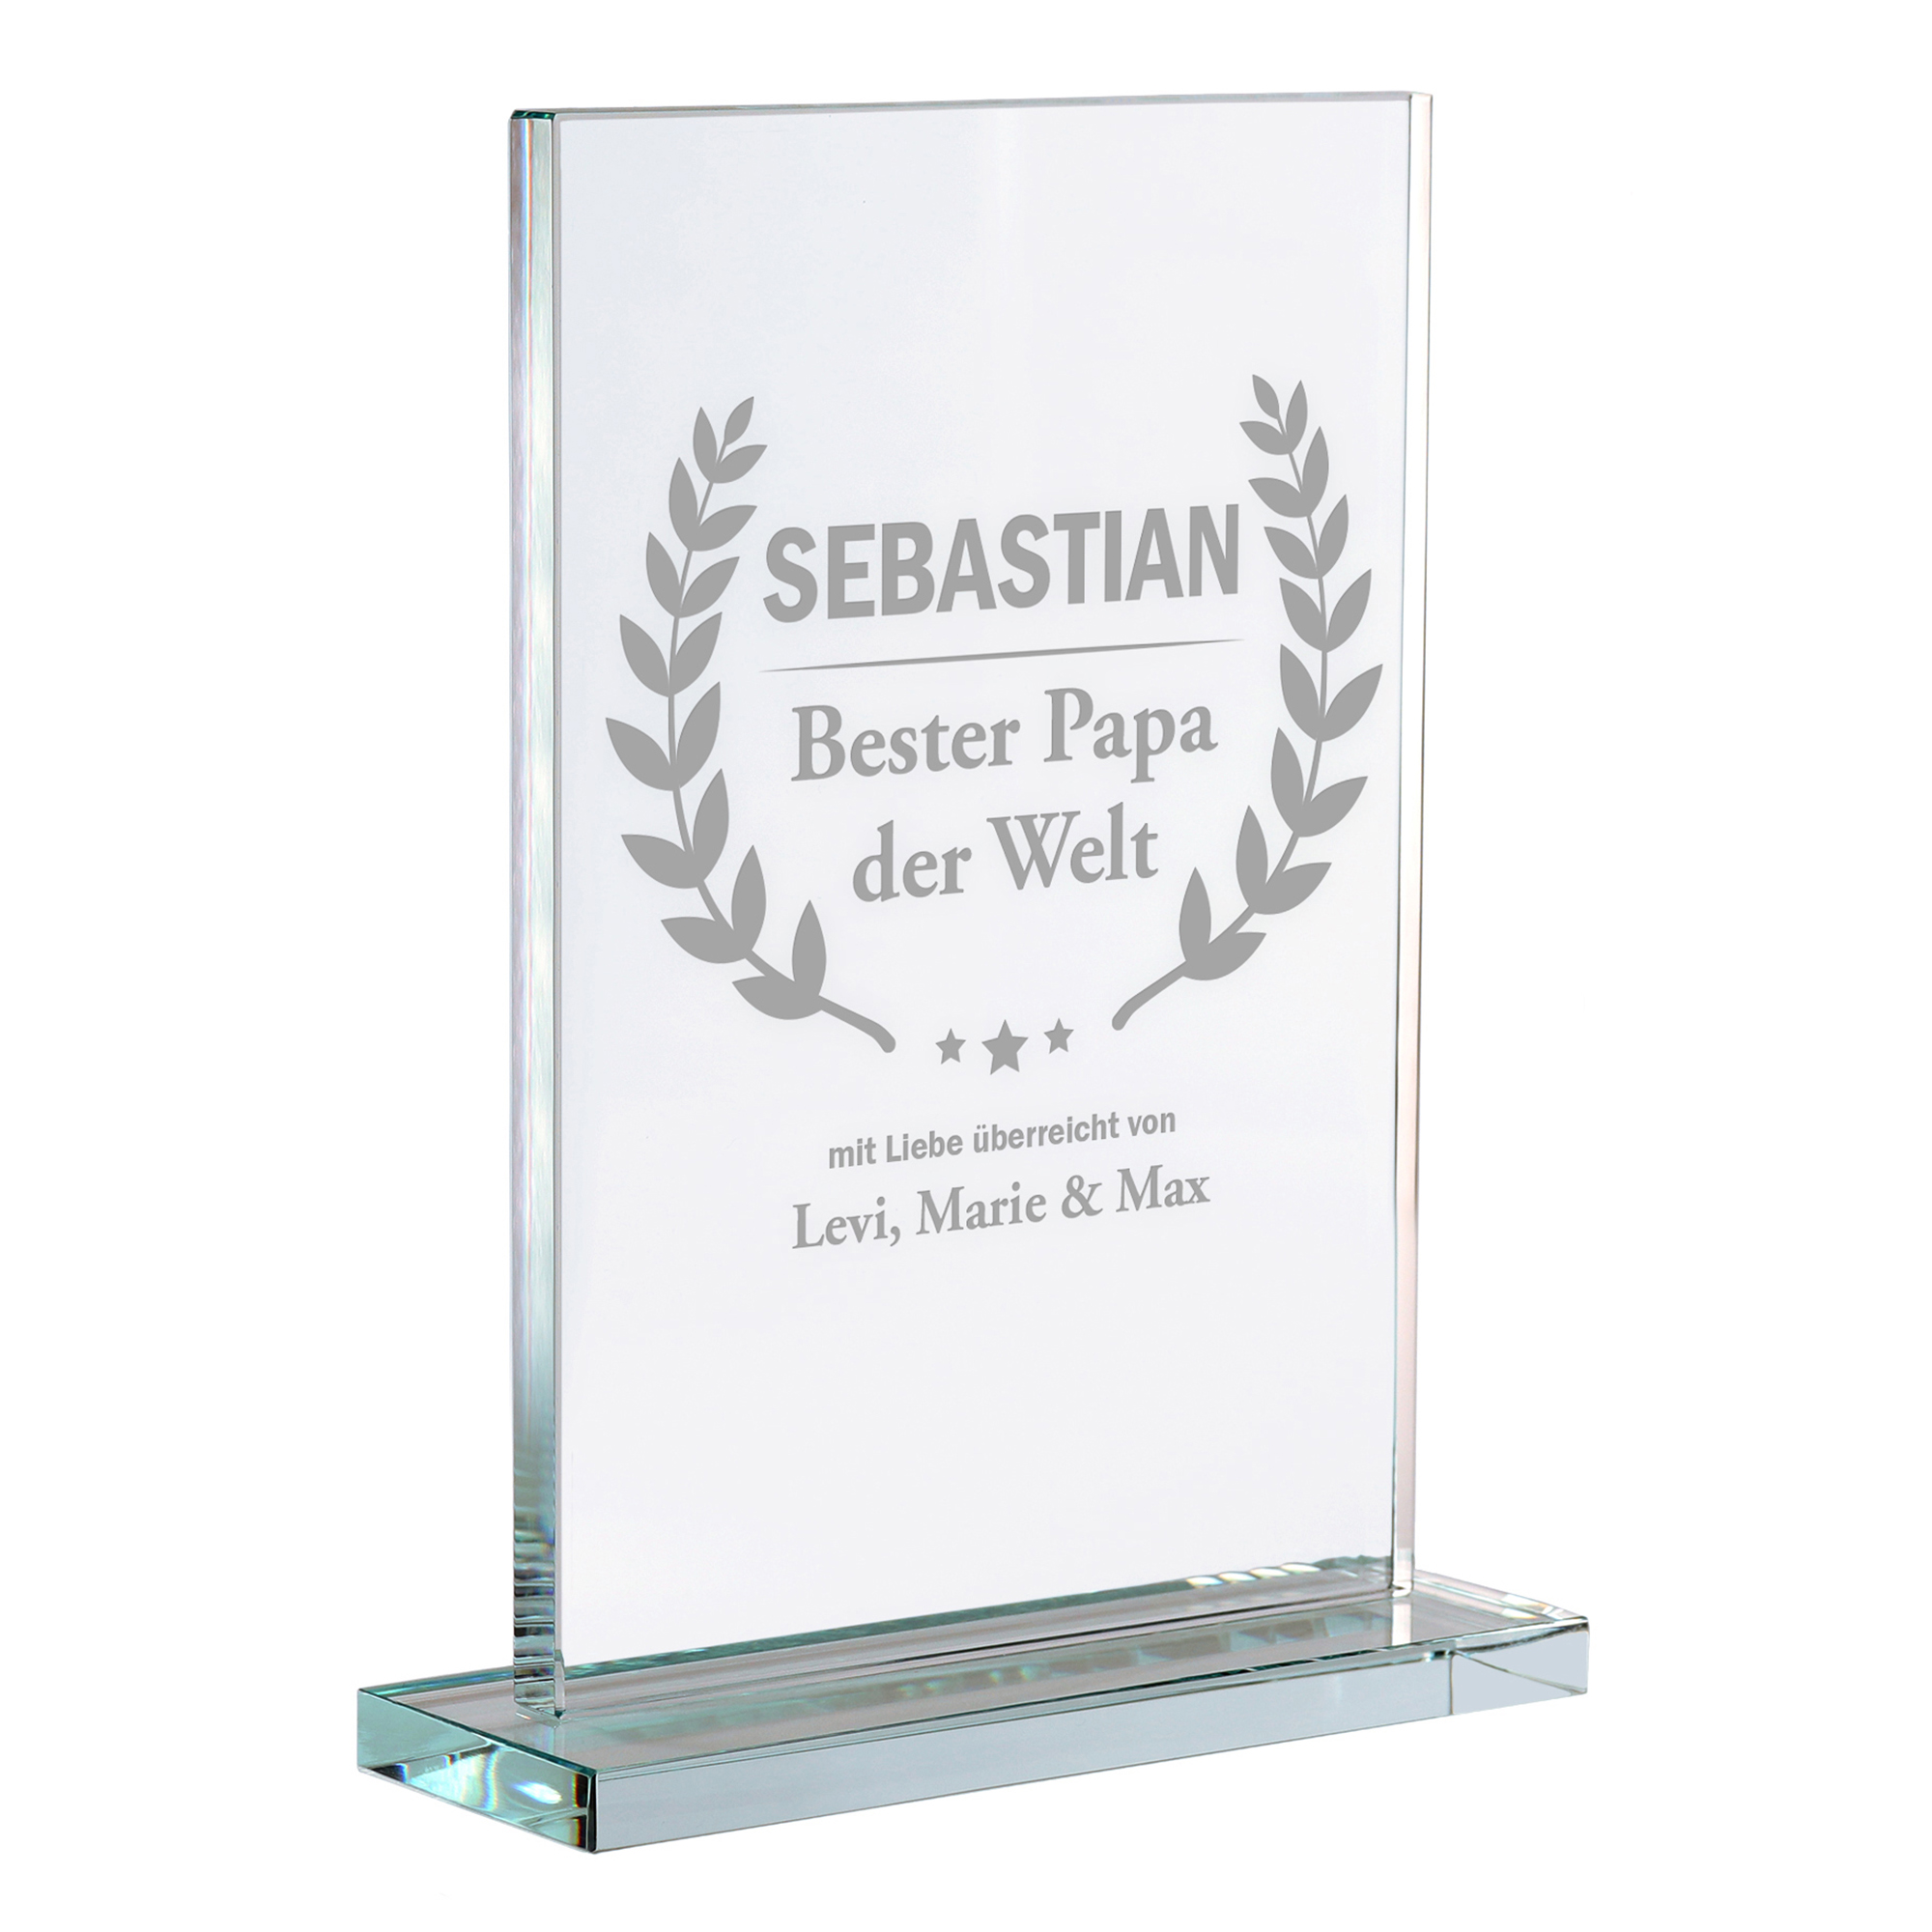 Personalisierter Glaspokal - Auszeichnung für Besten Papa 2162-22-MZ - 4